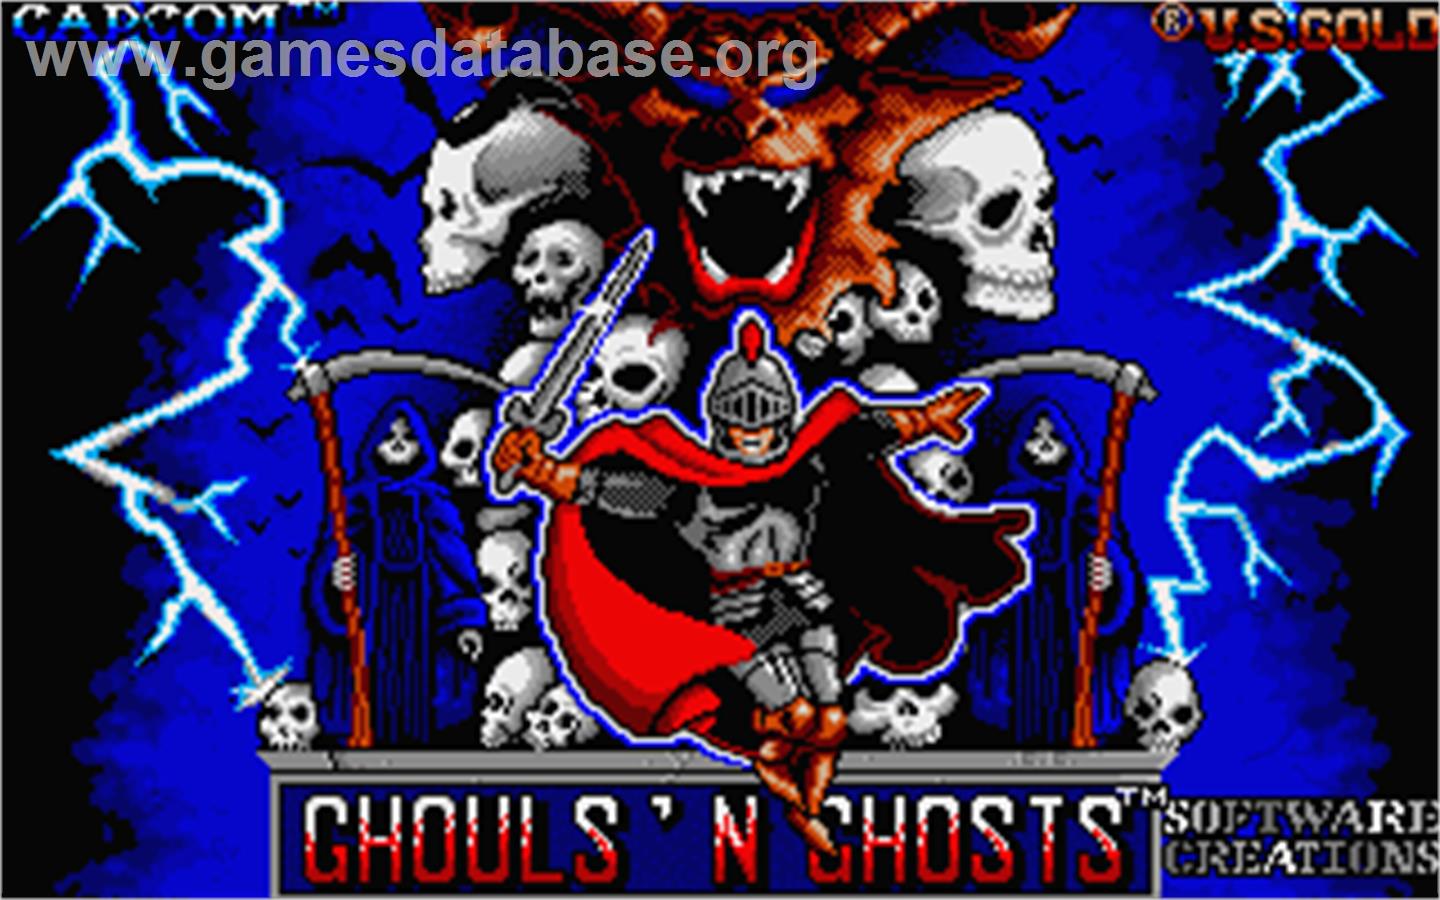 Ghouls'n Ghosts - Atari ST - Artwork - Title Screen